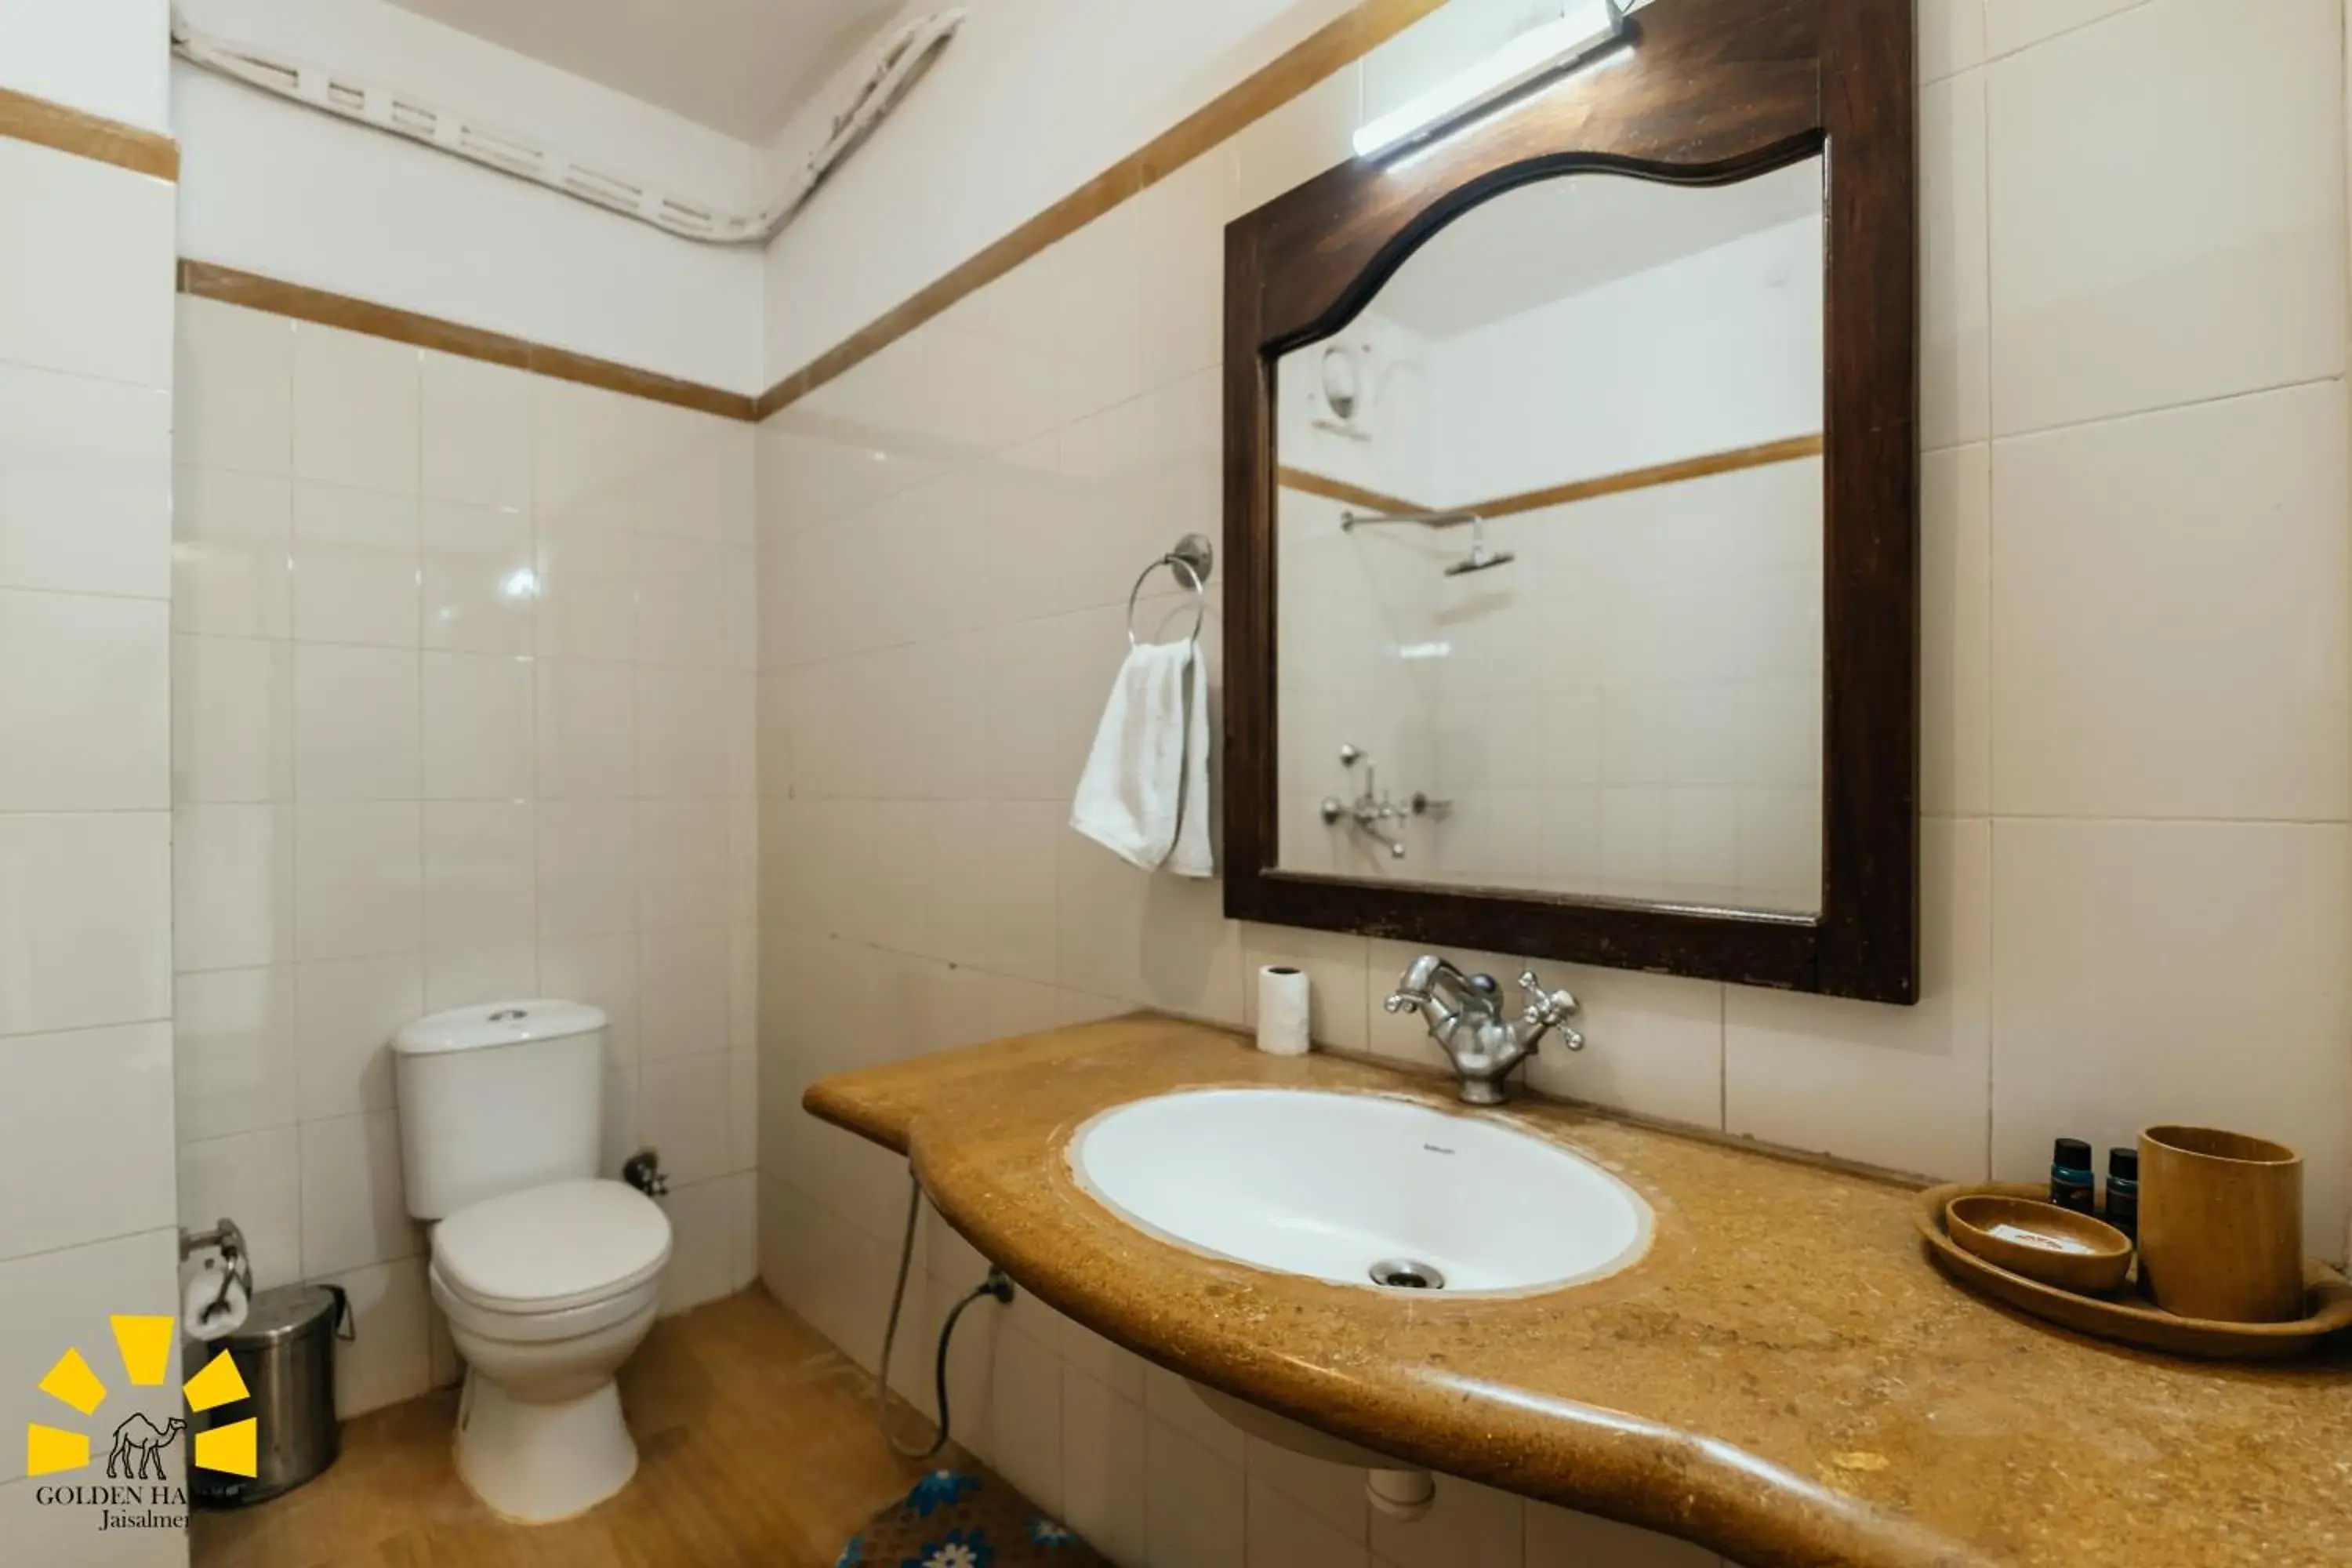 Bathroom in Golden Haveli